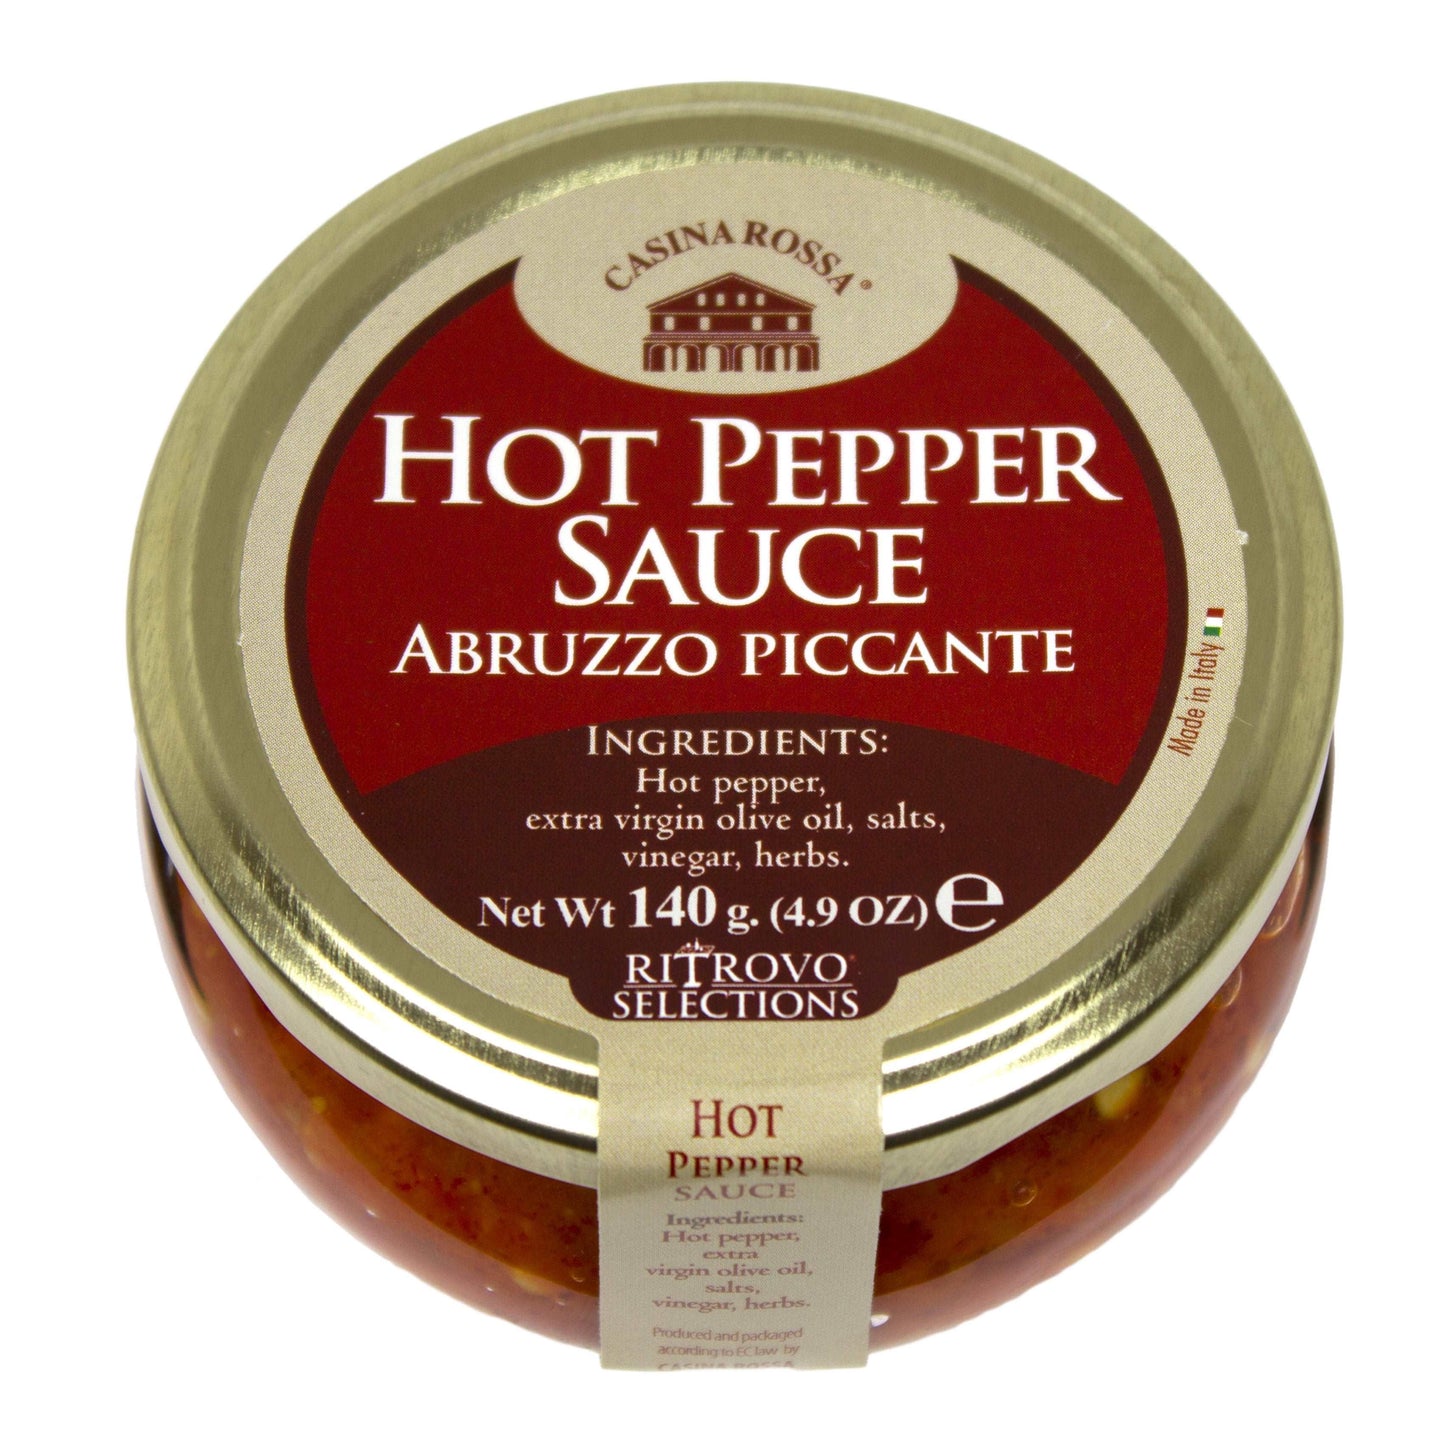 Casina Rossa Abruzzo Piccante Hot Pepper Sauce